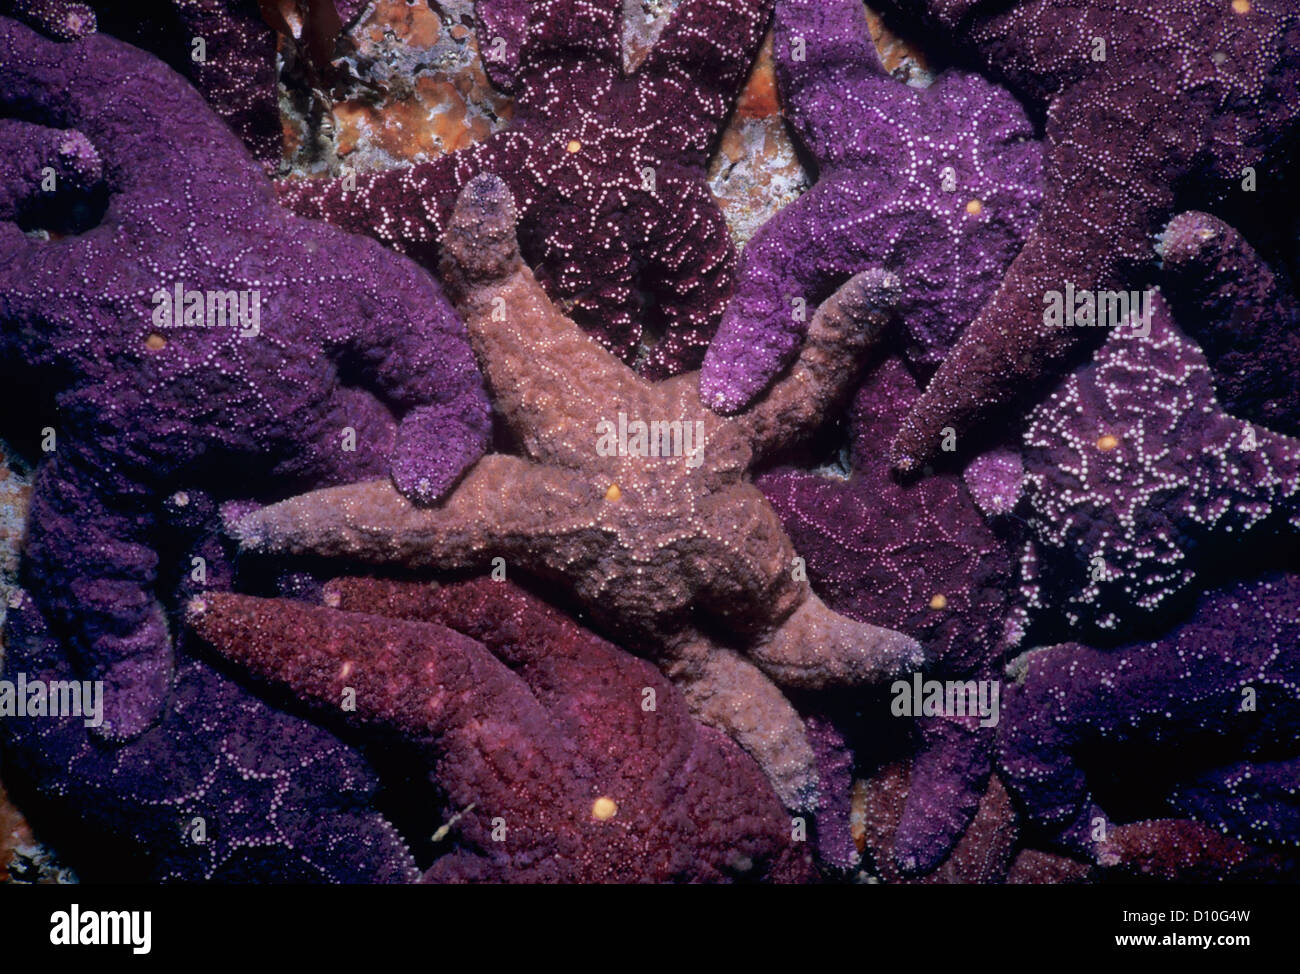 Les étoiles de mer ocre (Pisaster ochraceus) se nourrit de balanes. L'île de Vancouver, Colombie-Britannique, Canada Banque D'Images